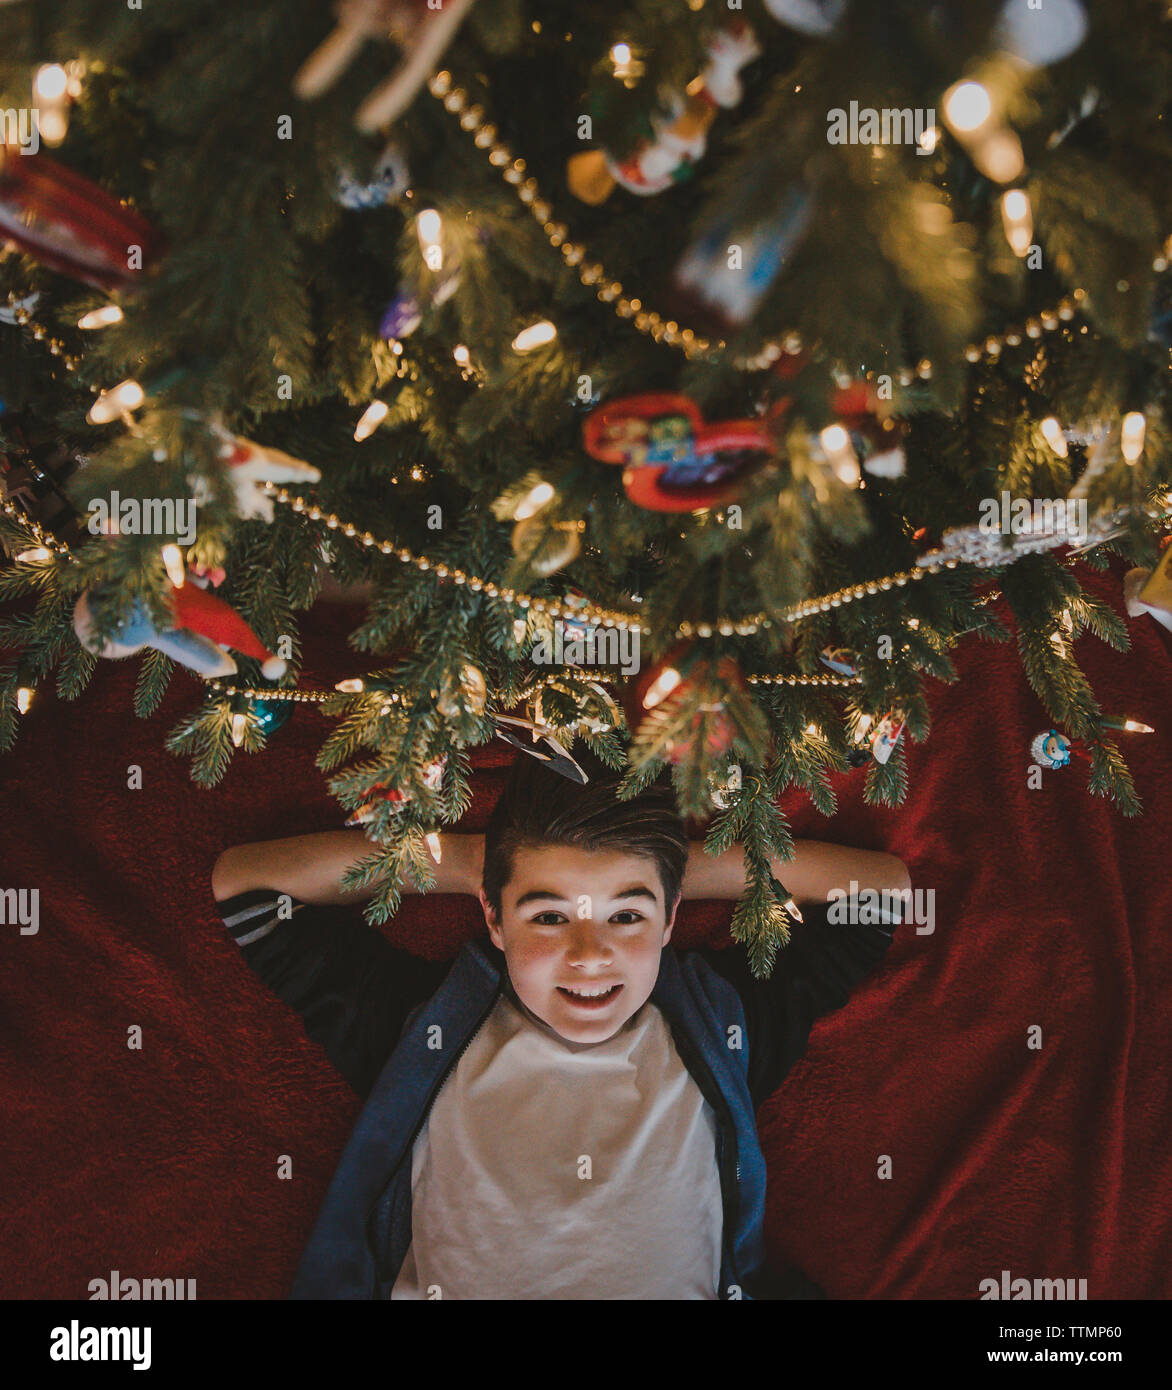 Kopfporträt eines Jungen mit Händen hinter Kopf, der zu Hause am weihnachtsbaum liegt Stockfoto